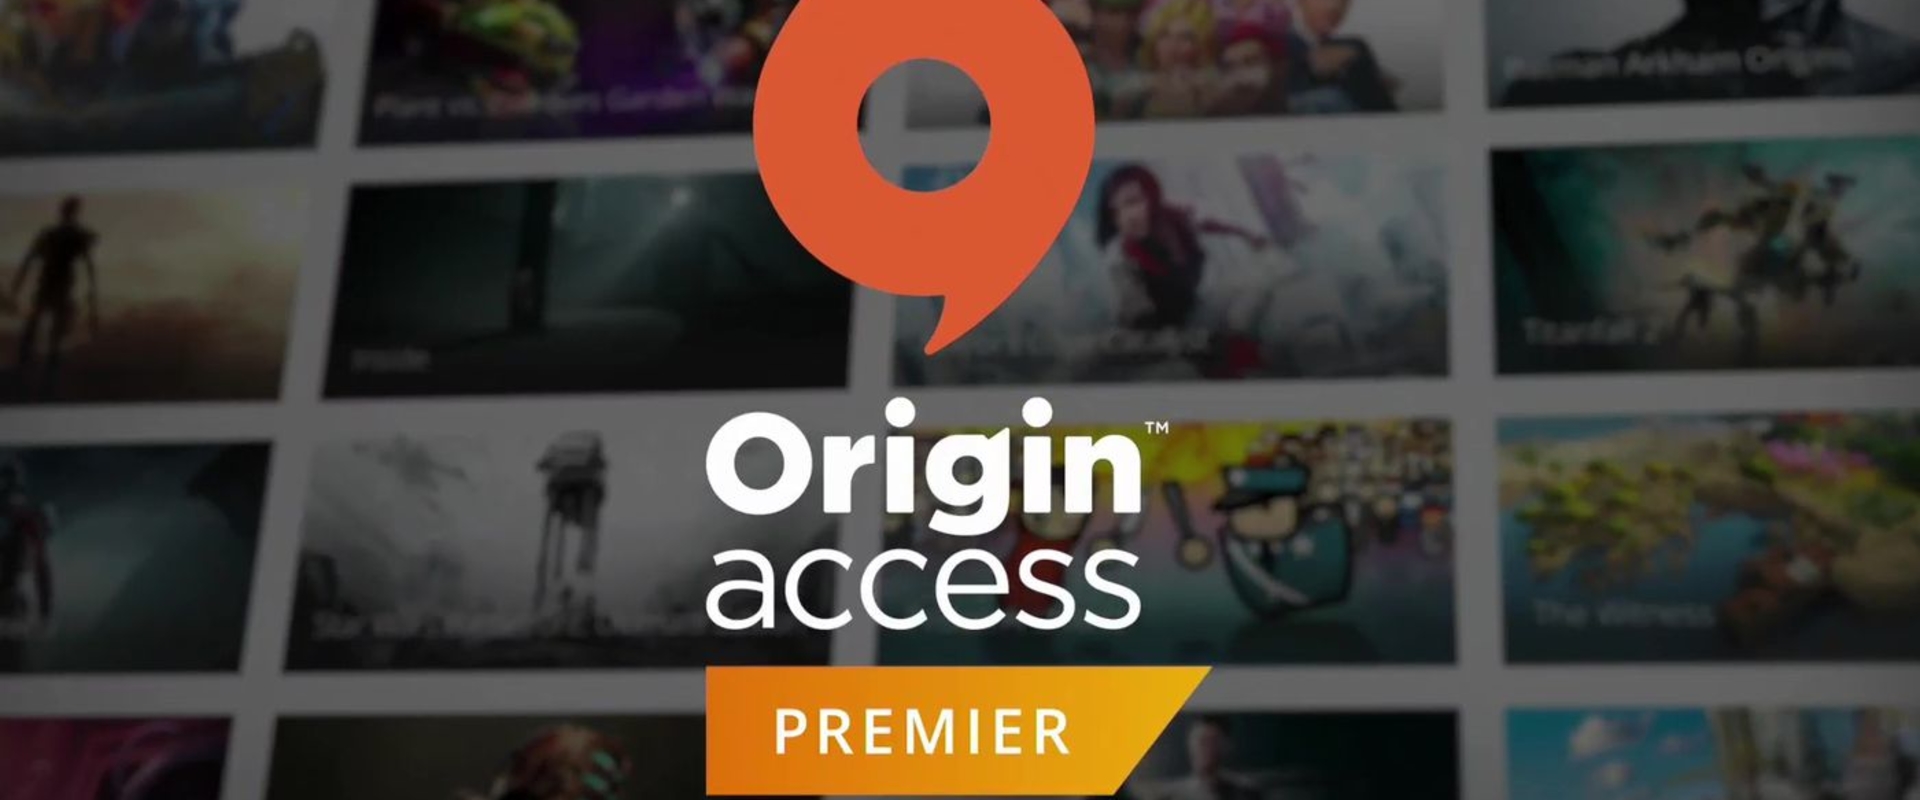 EA Play 2018 - Origin Access Premier - játssz a megjelenés dátuma előtt